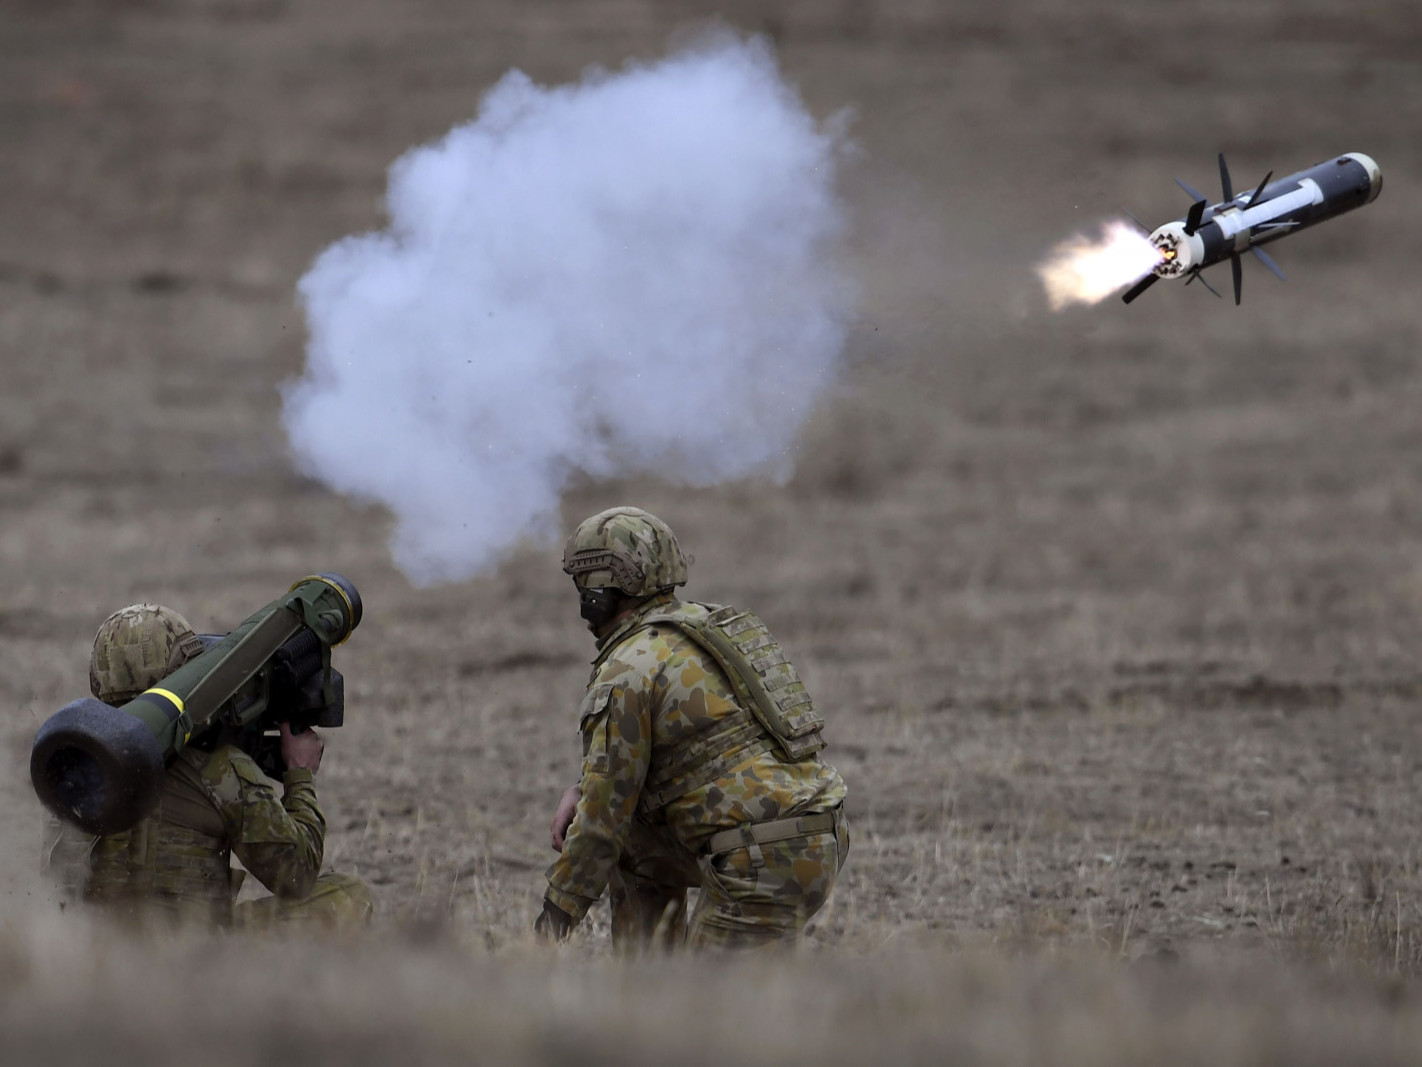 ВИДЕО: “Танкны алуурчин” буюу Javelin гэж зэвсэг Украинд тус болж байна уу